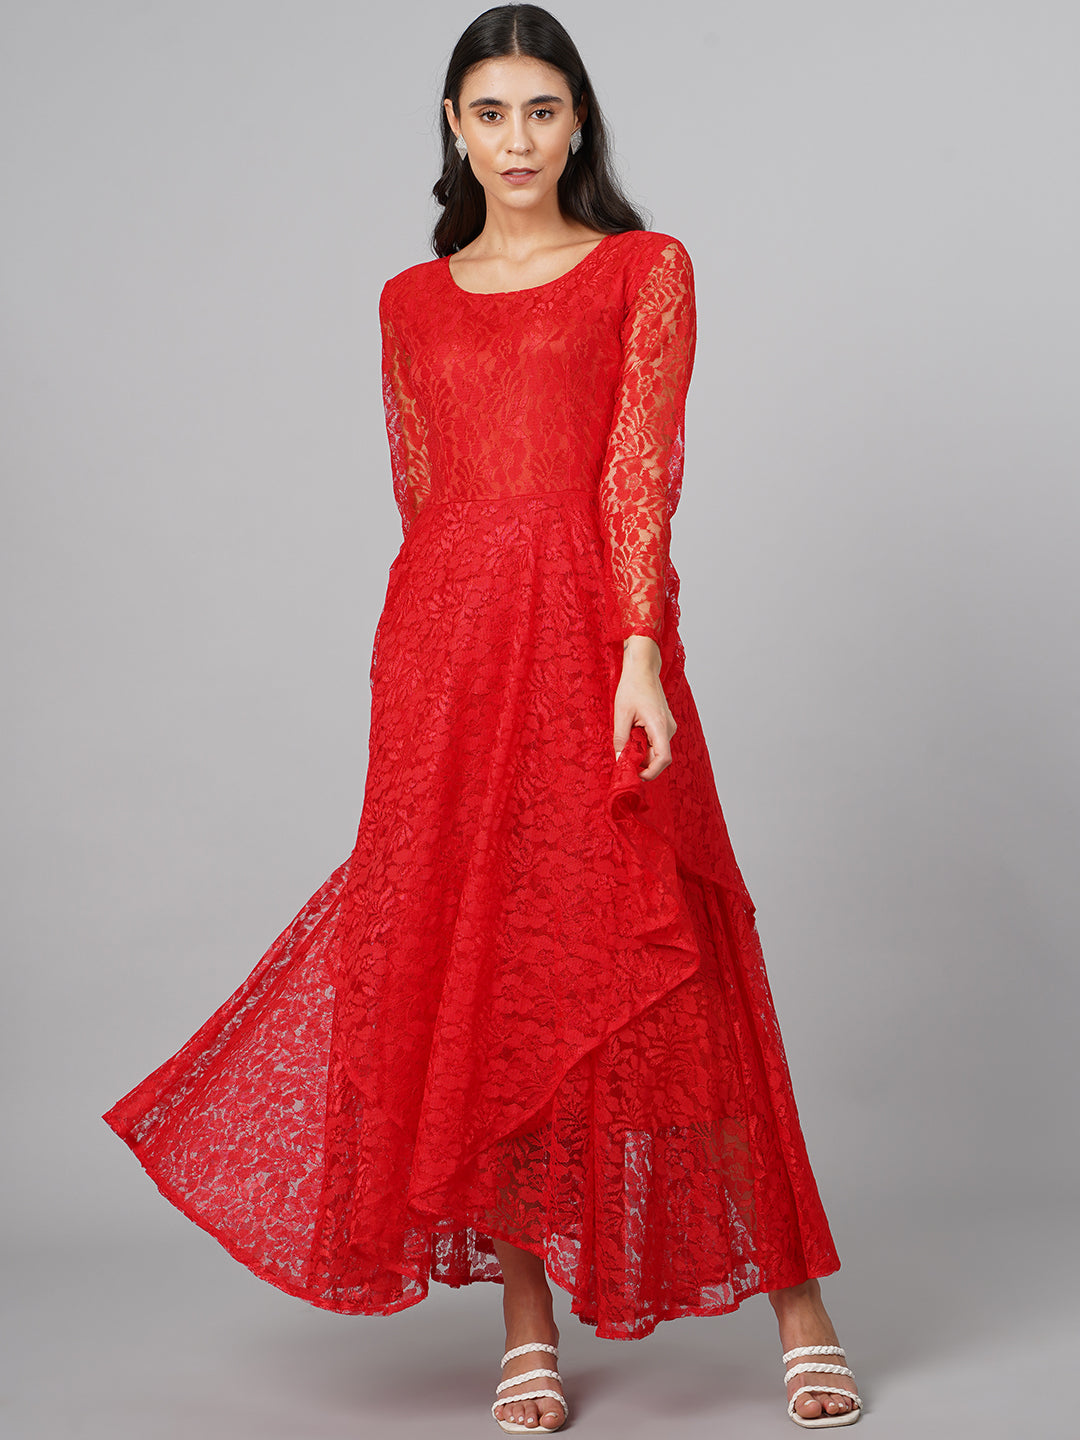 SCORPIUS Red Net Dress